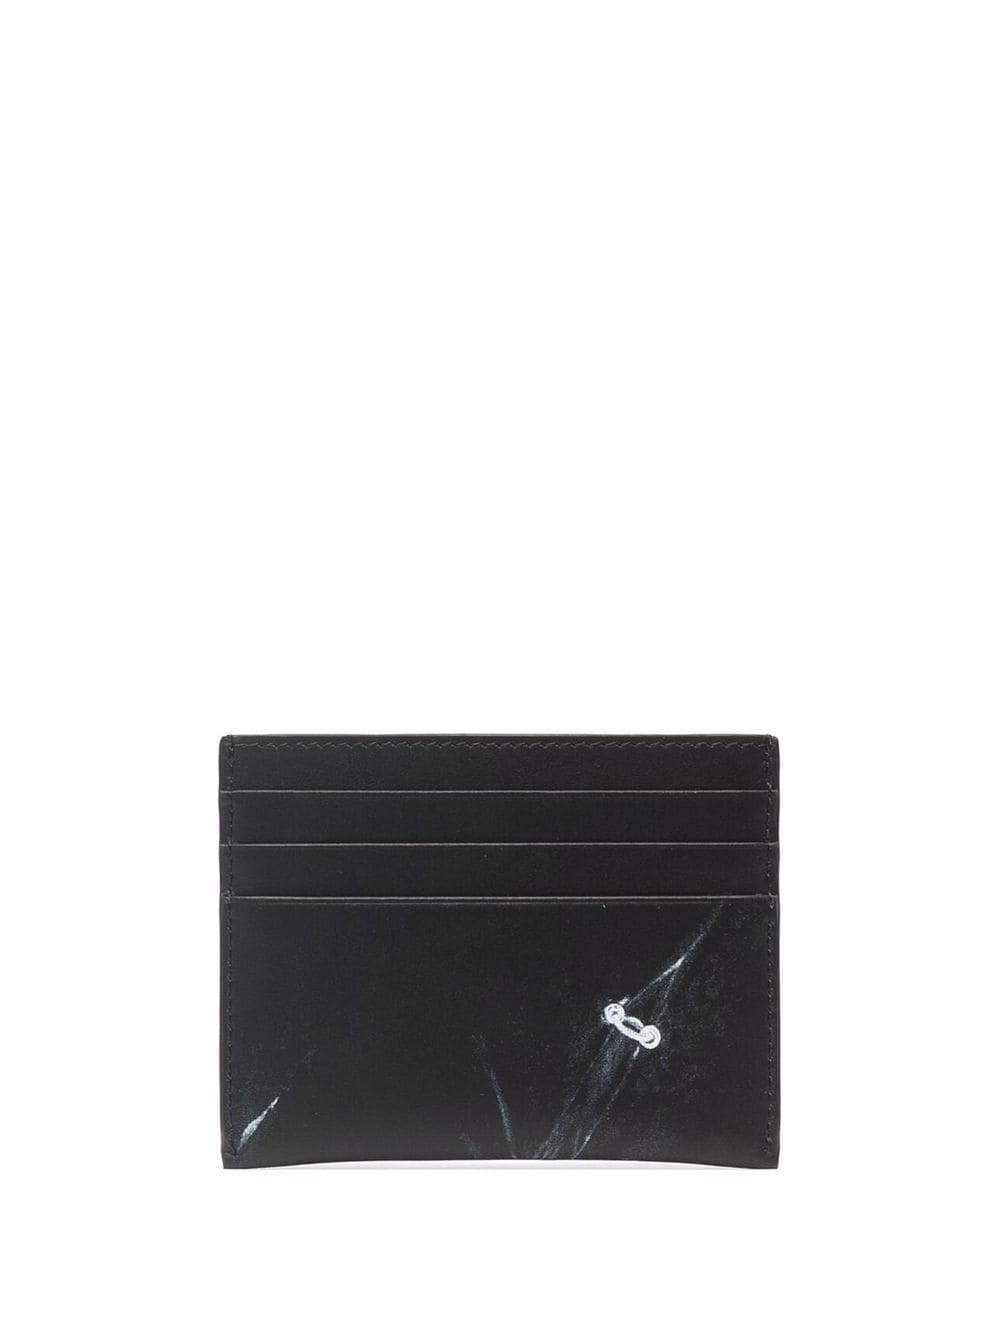 Givenchy trompe l'oeil print card holder - FARFETCH